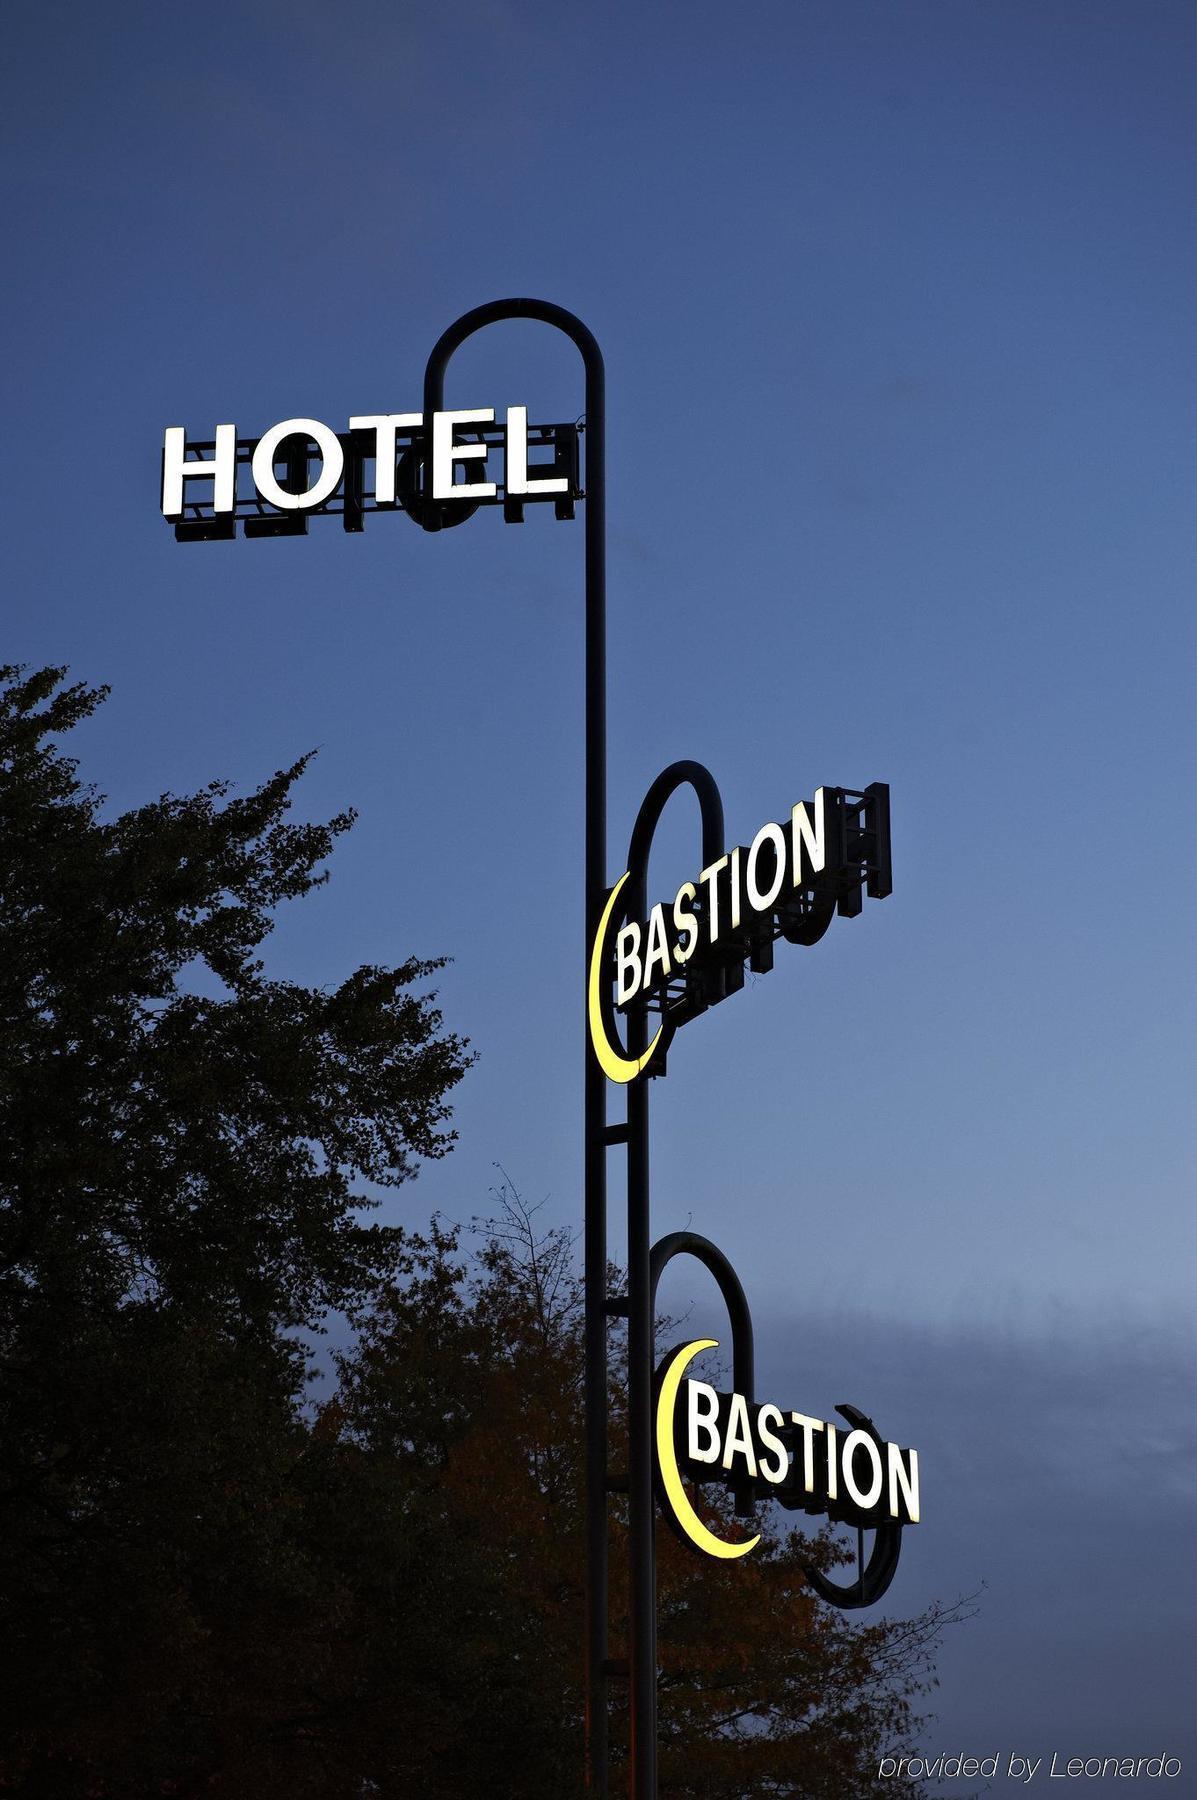 バスティオン ホテル スキポール ホーフドロープ ﾎｰﾌﾄﾞﾛｰﾌﾟ エクステリア 写真